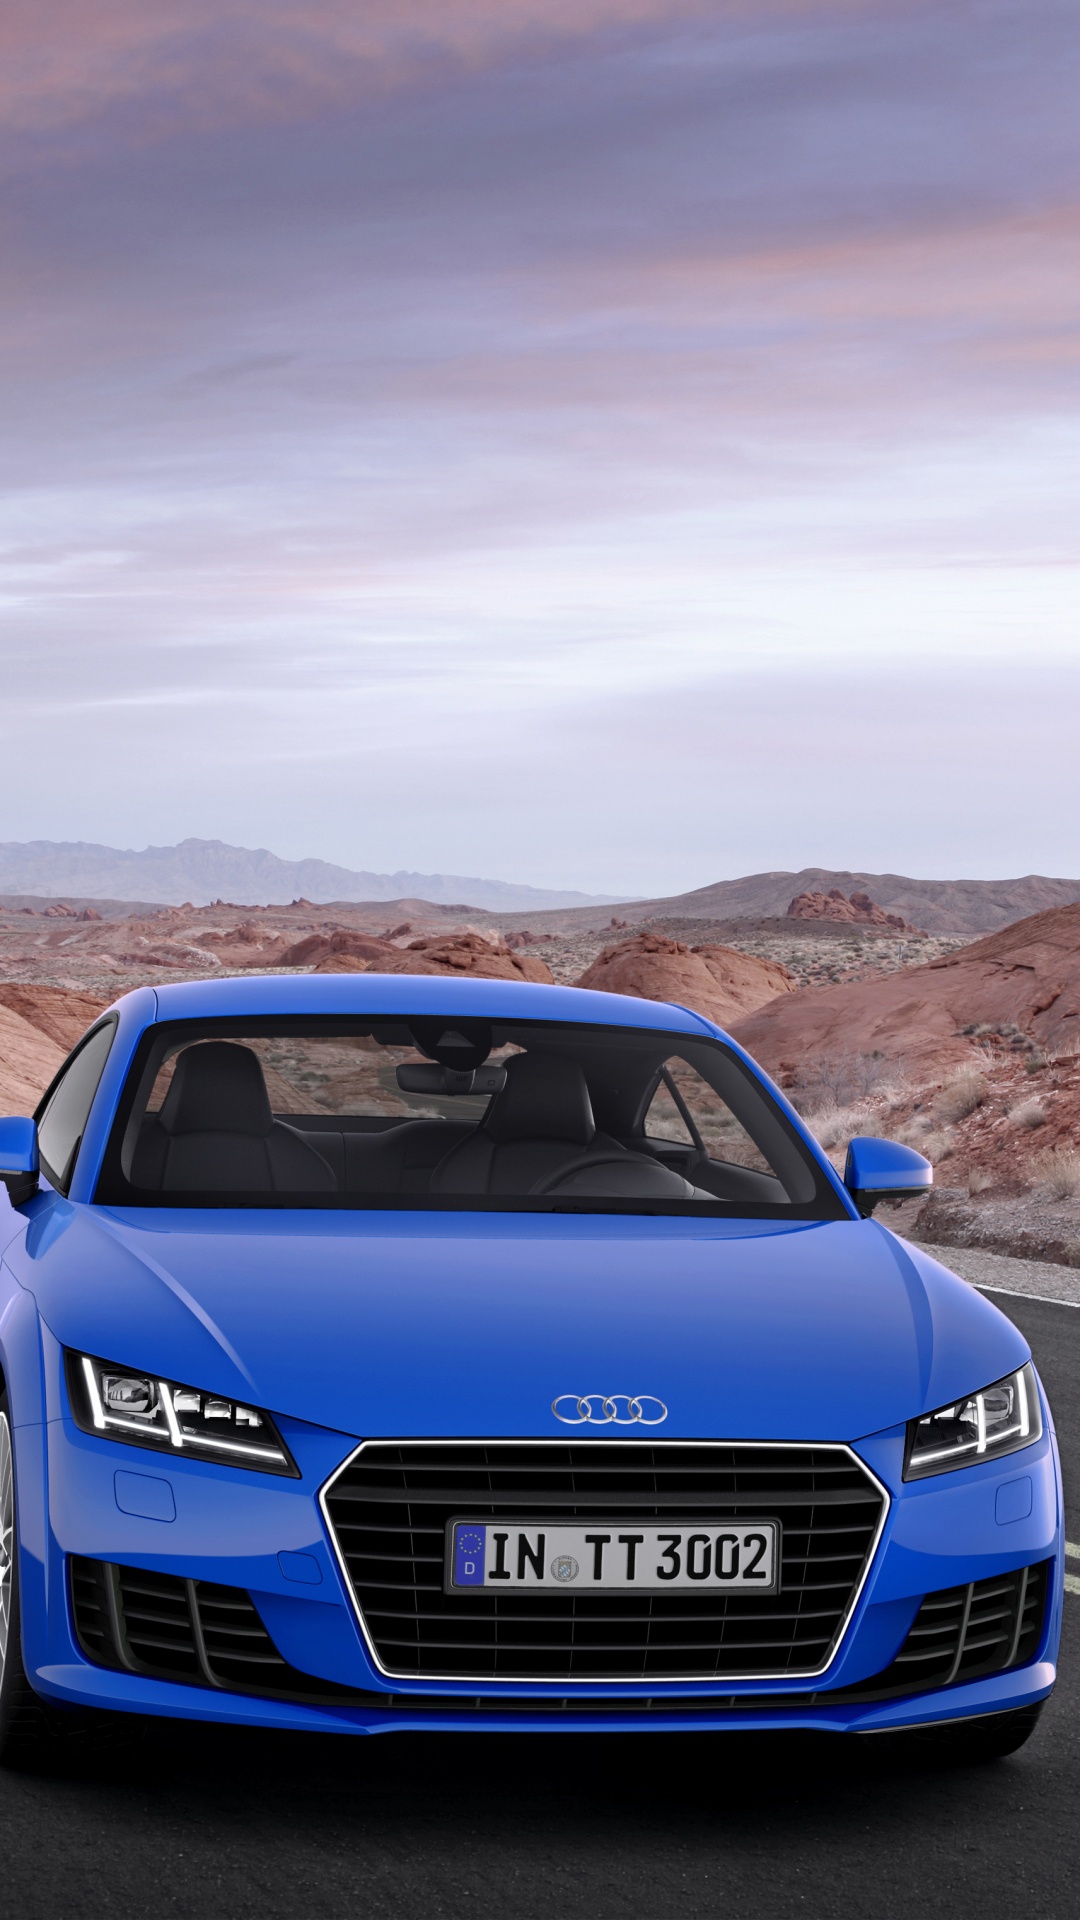 Audi a 4 Azul en la Carretera Durante el Día. Wallpaper in 1080x1920 Resolution